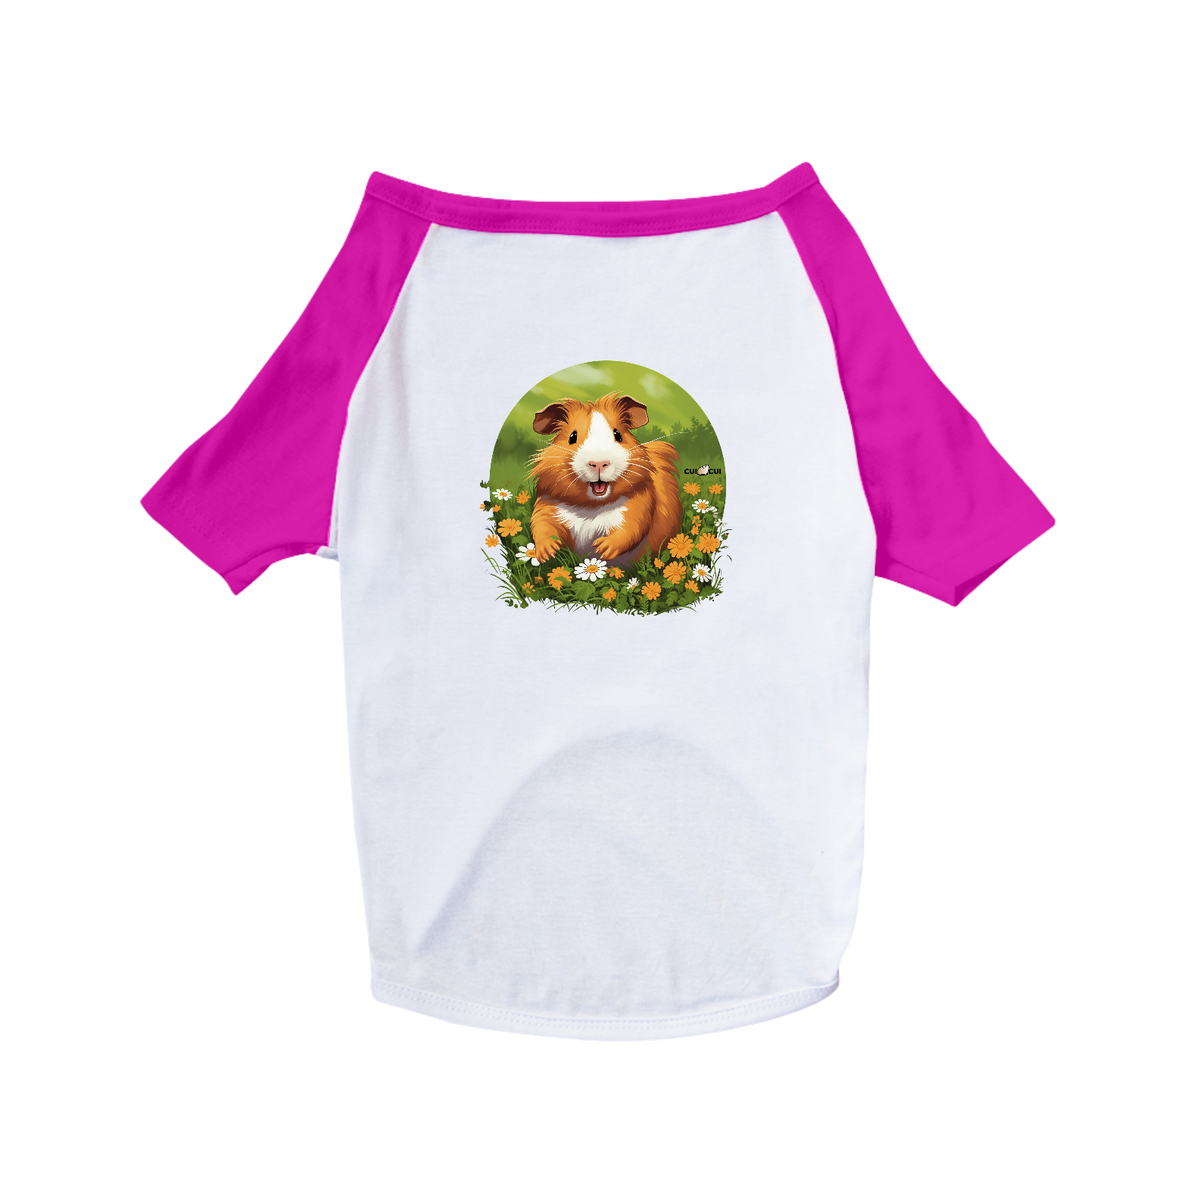 Nome do produto: Cui Cui e flores (Camisa Pet Dog)